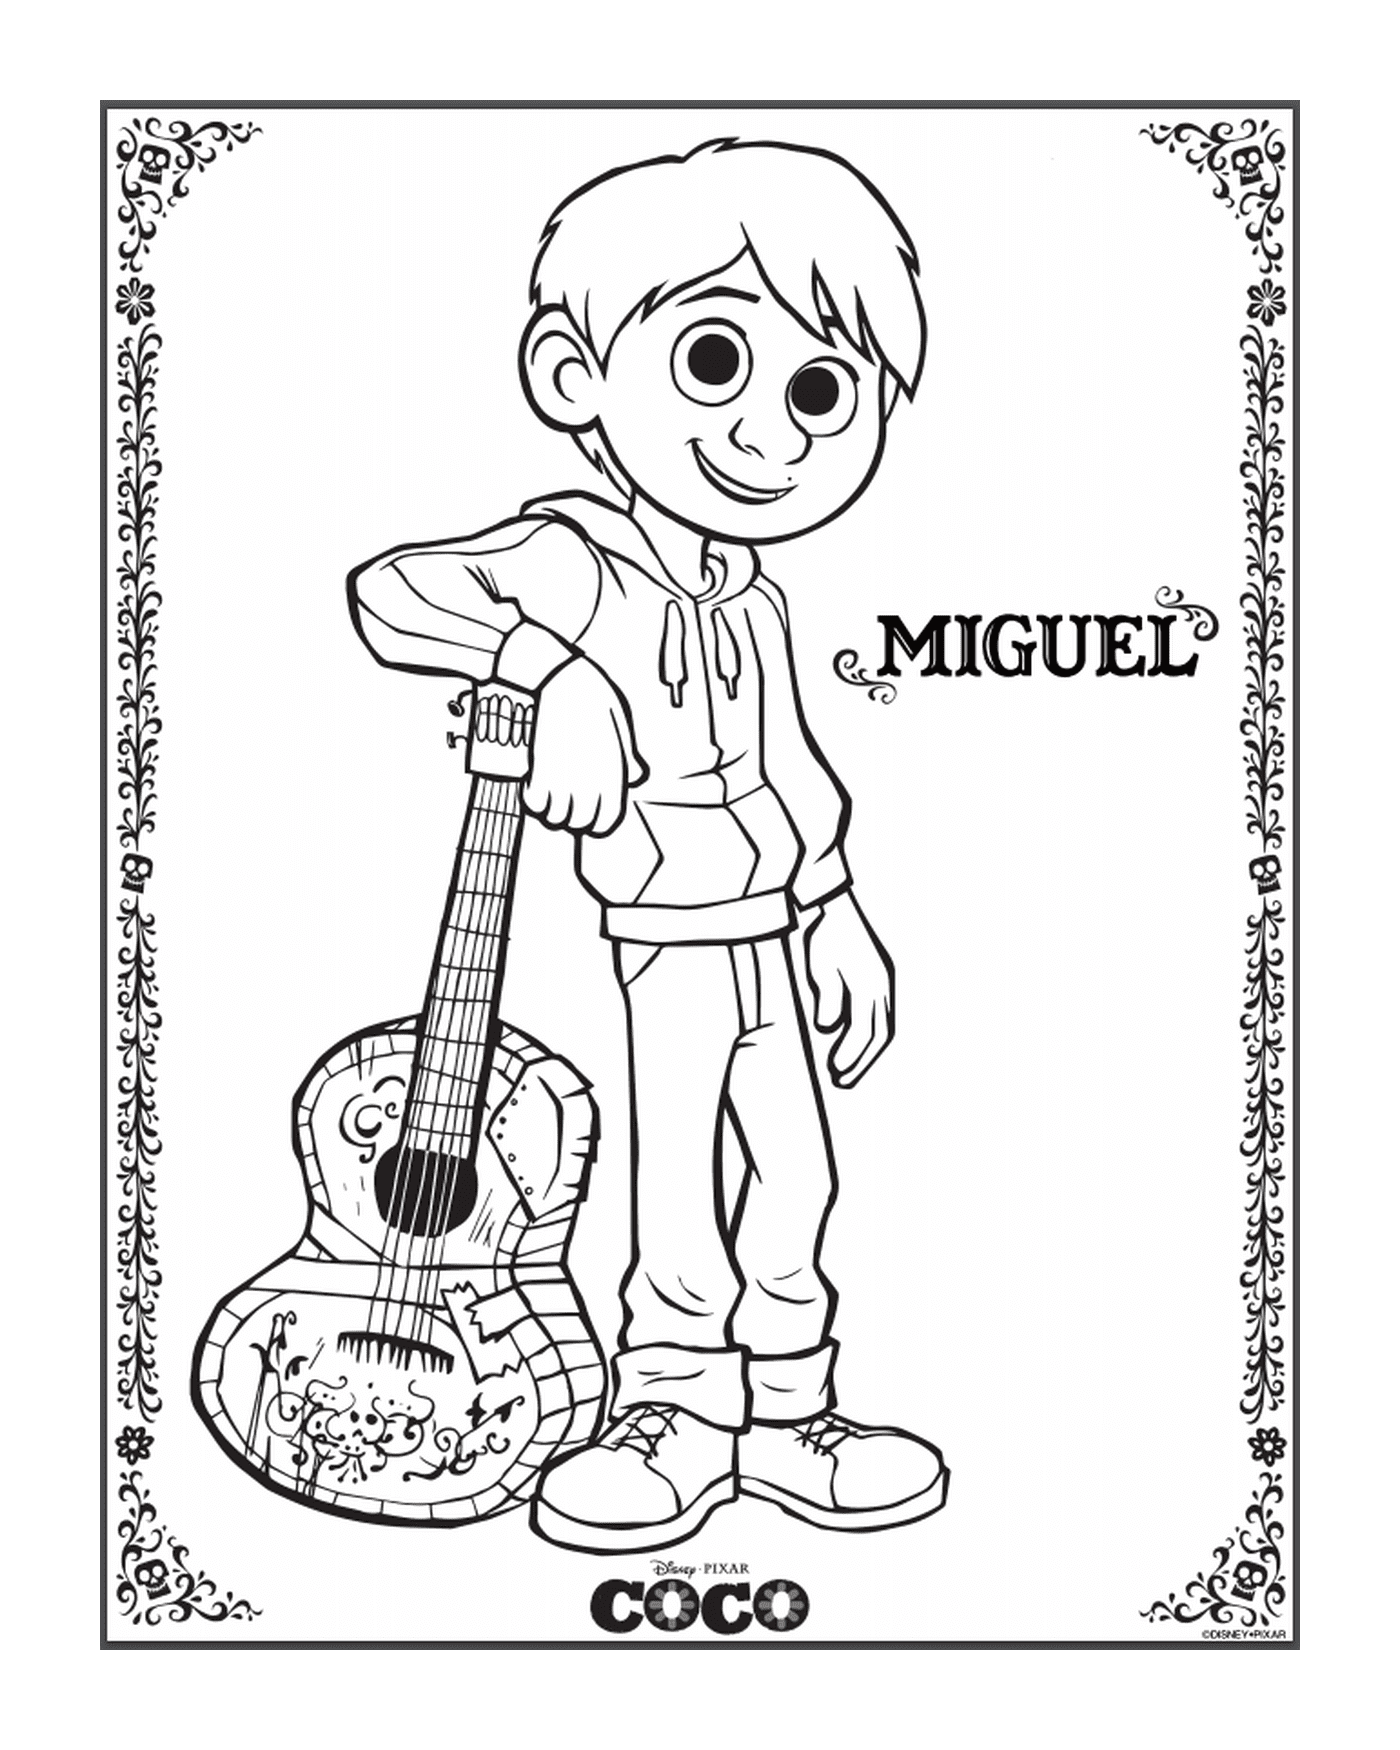   Miguel dans Coco, le film de Disney 